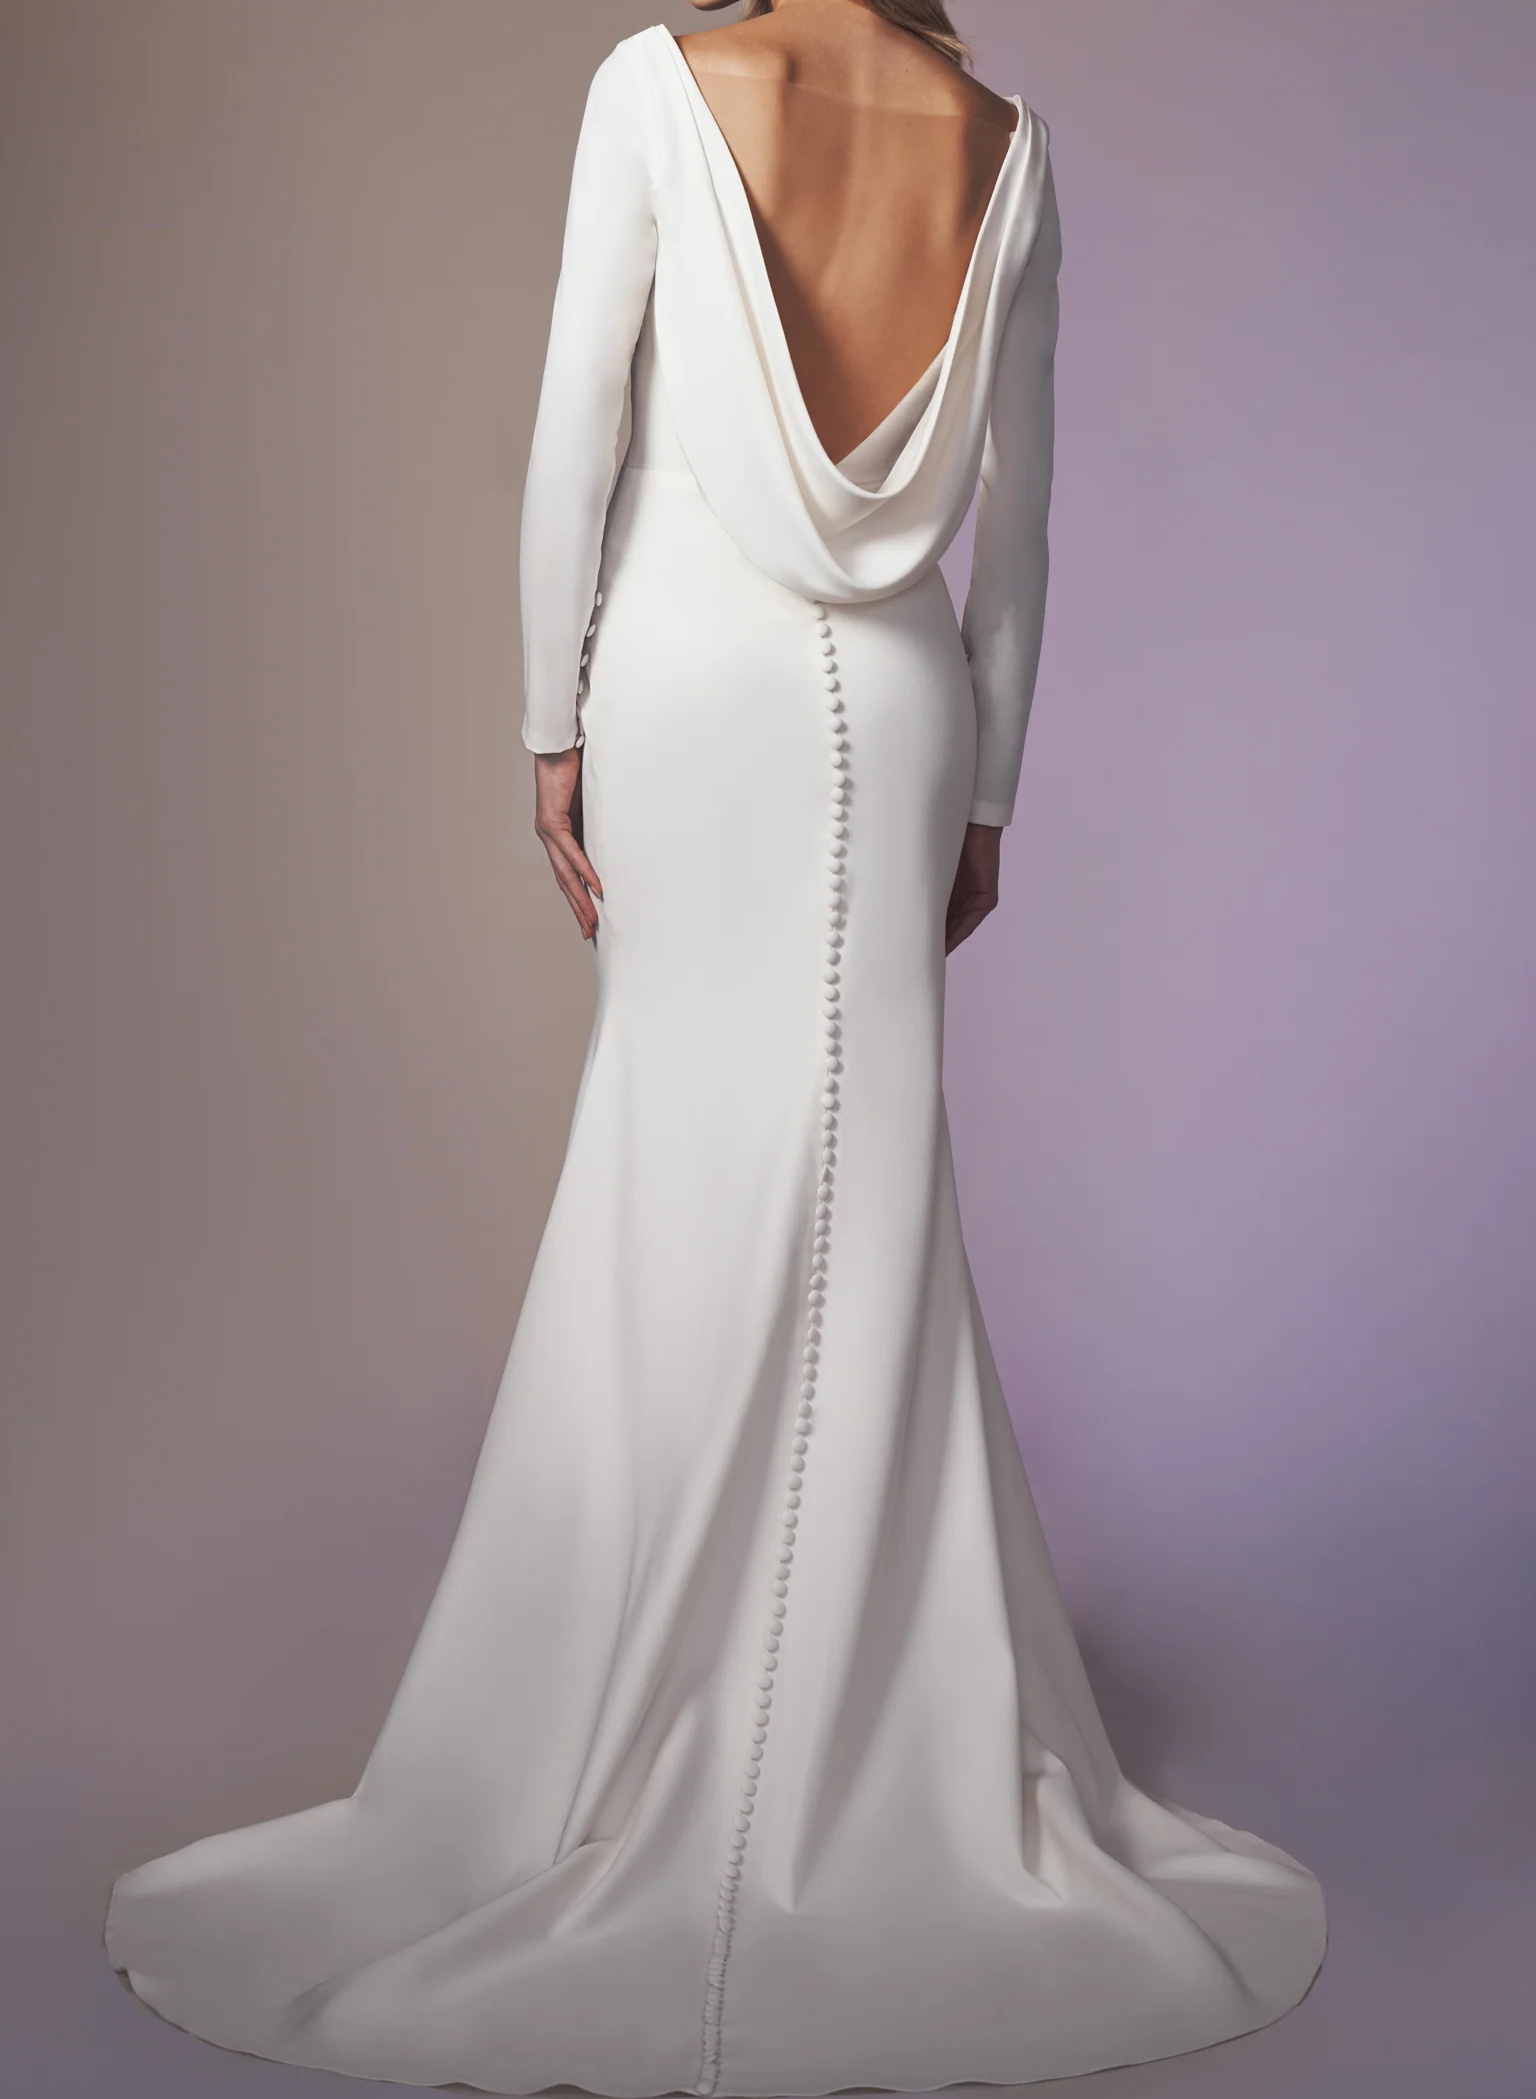 Cowl Back Elegant Long Sleeves Wedding Dresses With Mermaid Elastic Satin